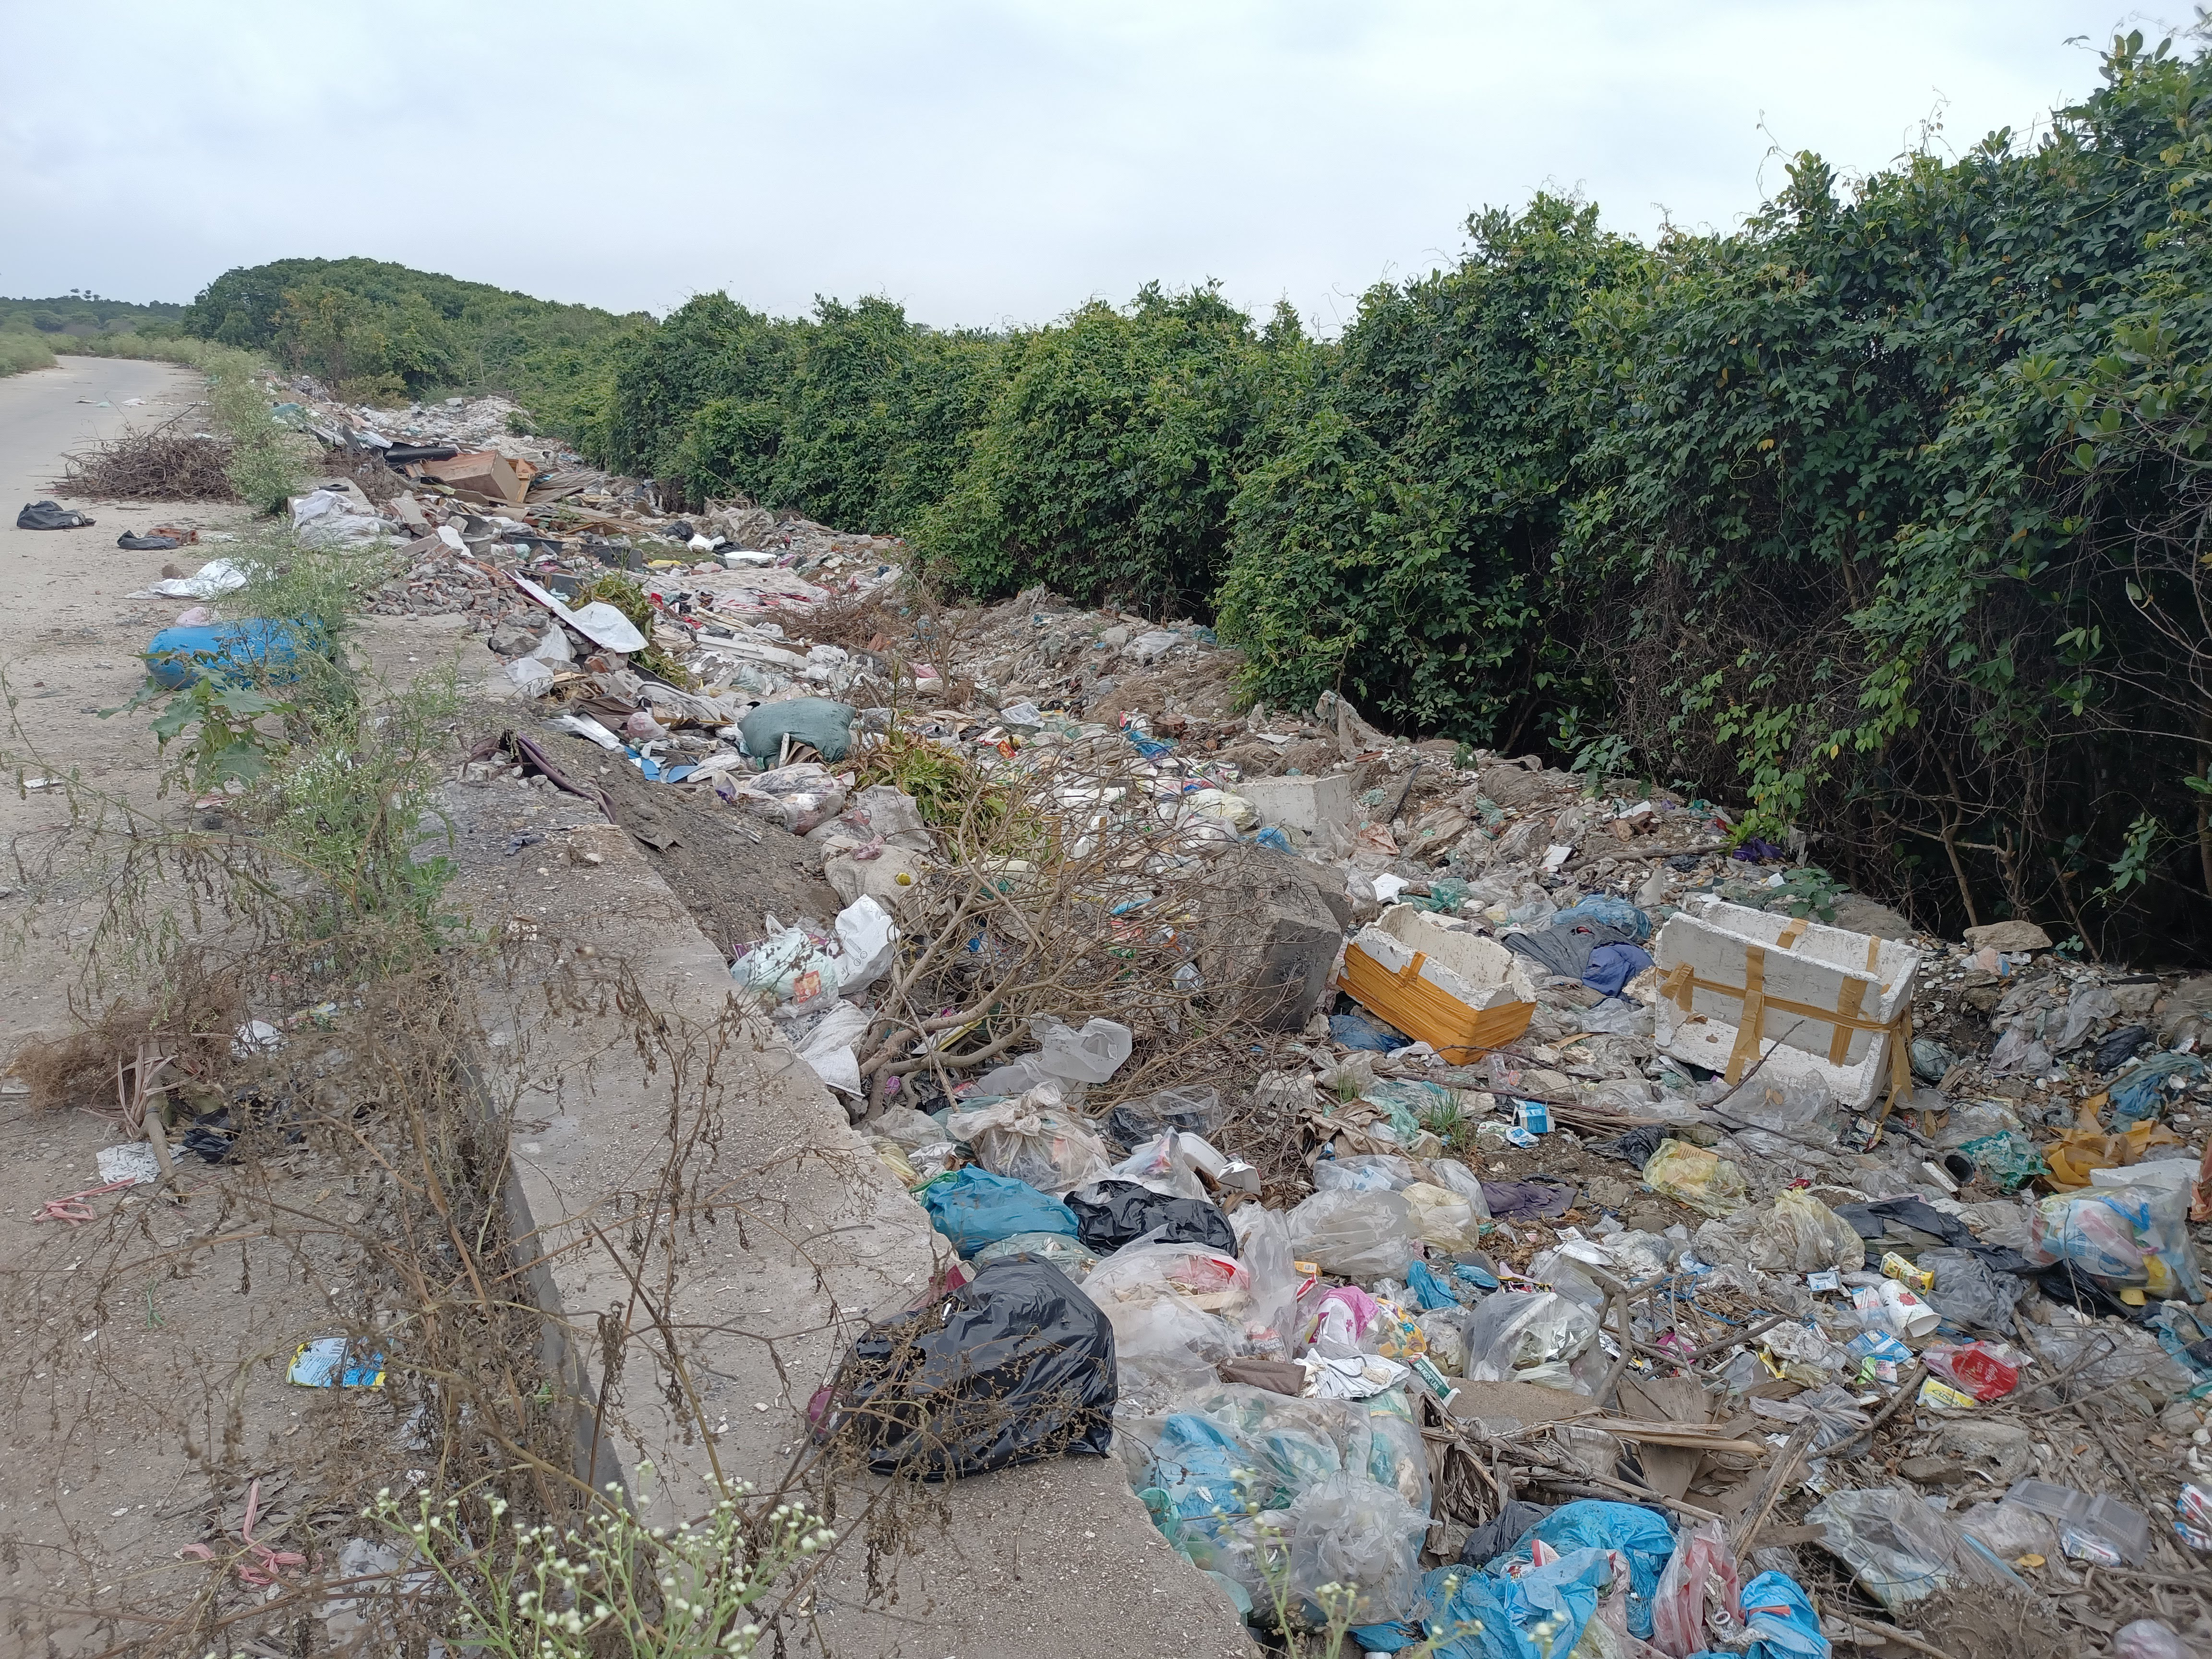 Ngay khu vực sát với cảng Lạch Vạn, rác thải được vứt giữa rừng bần và mép đường. Ảnh: Tiến Đông